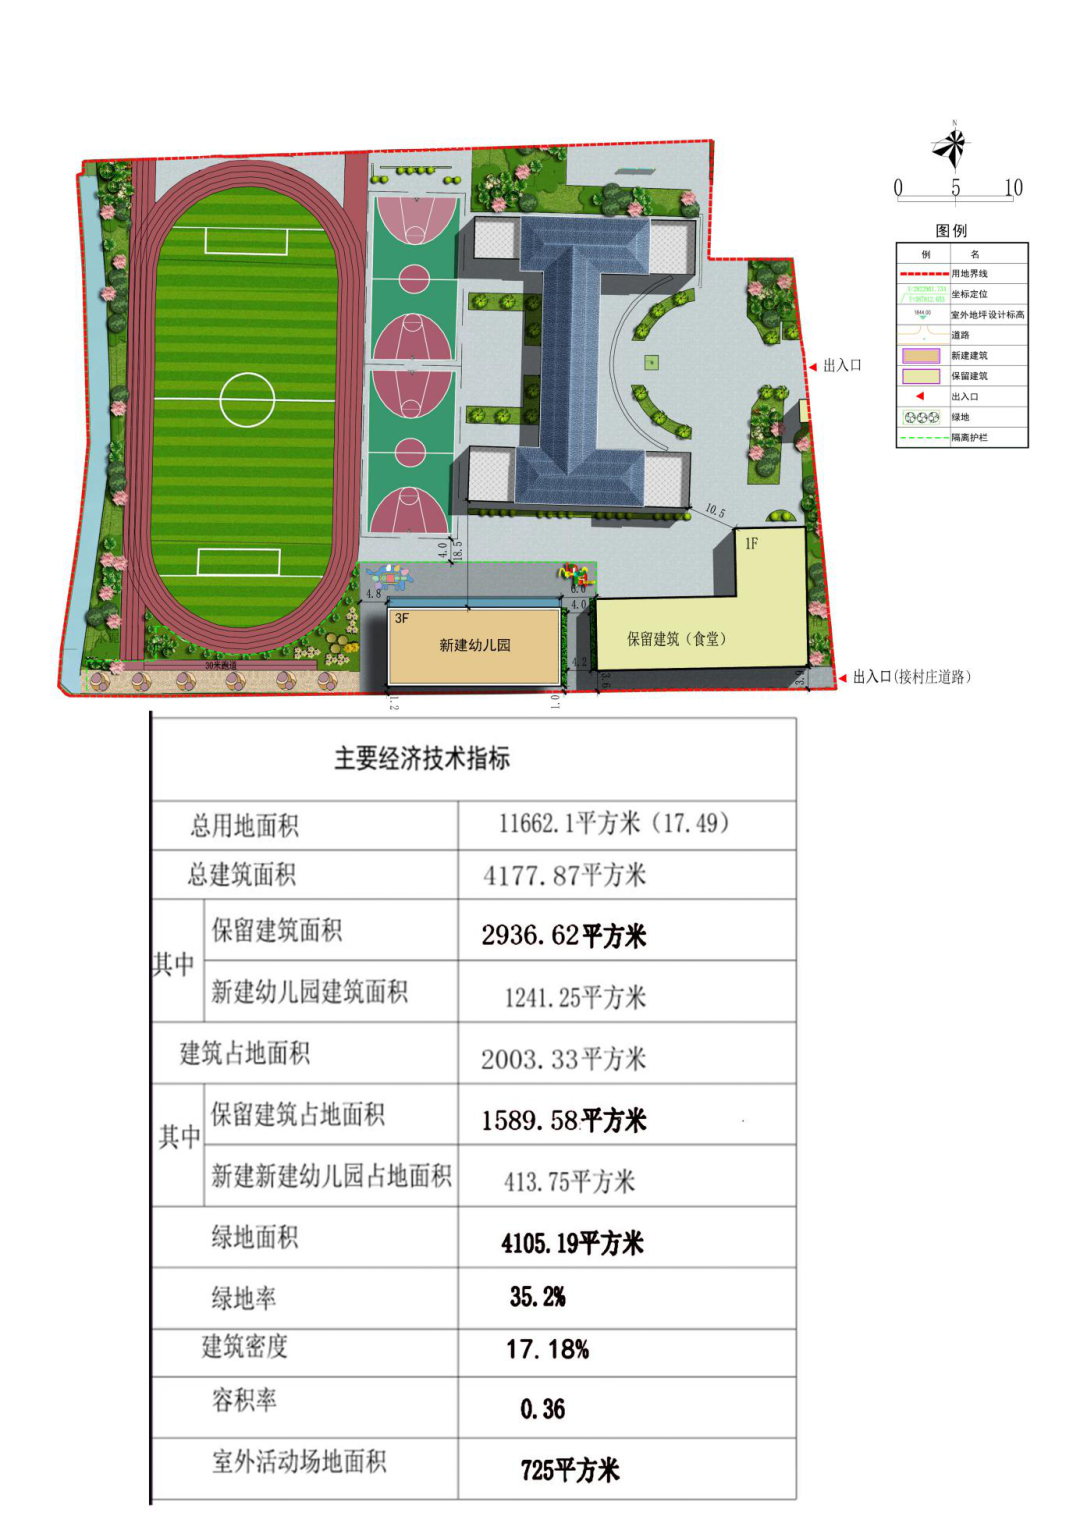 曲靖市麒麟区珠街街道涌泉村幼儿园新建项目修建性详细规划批前公示